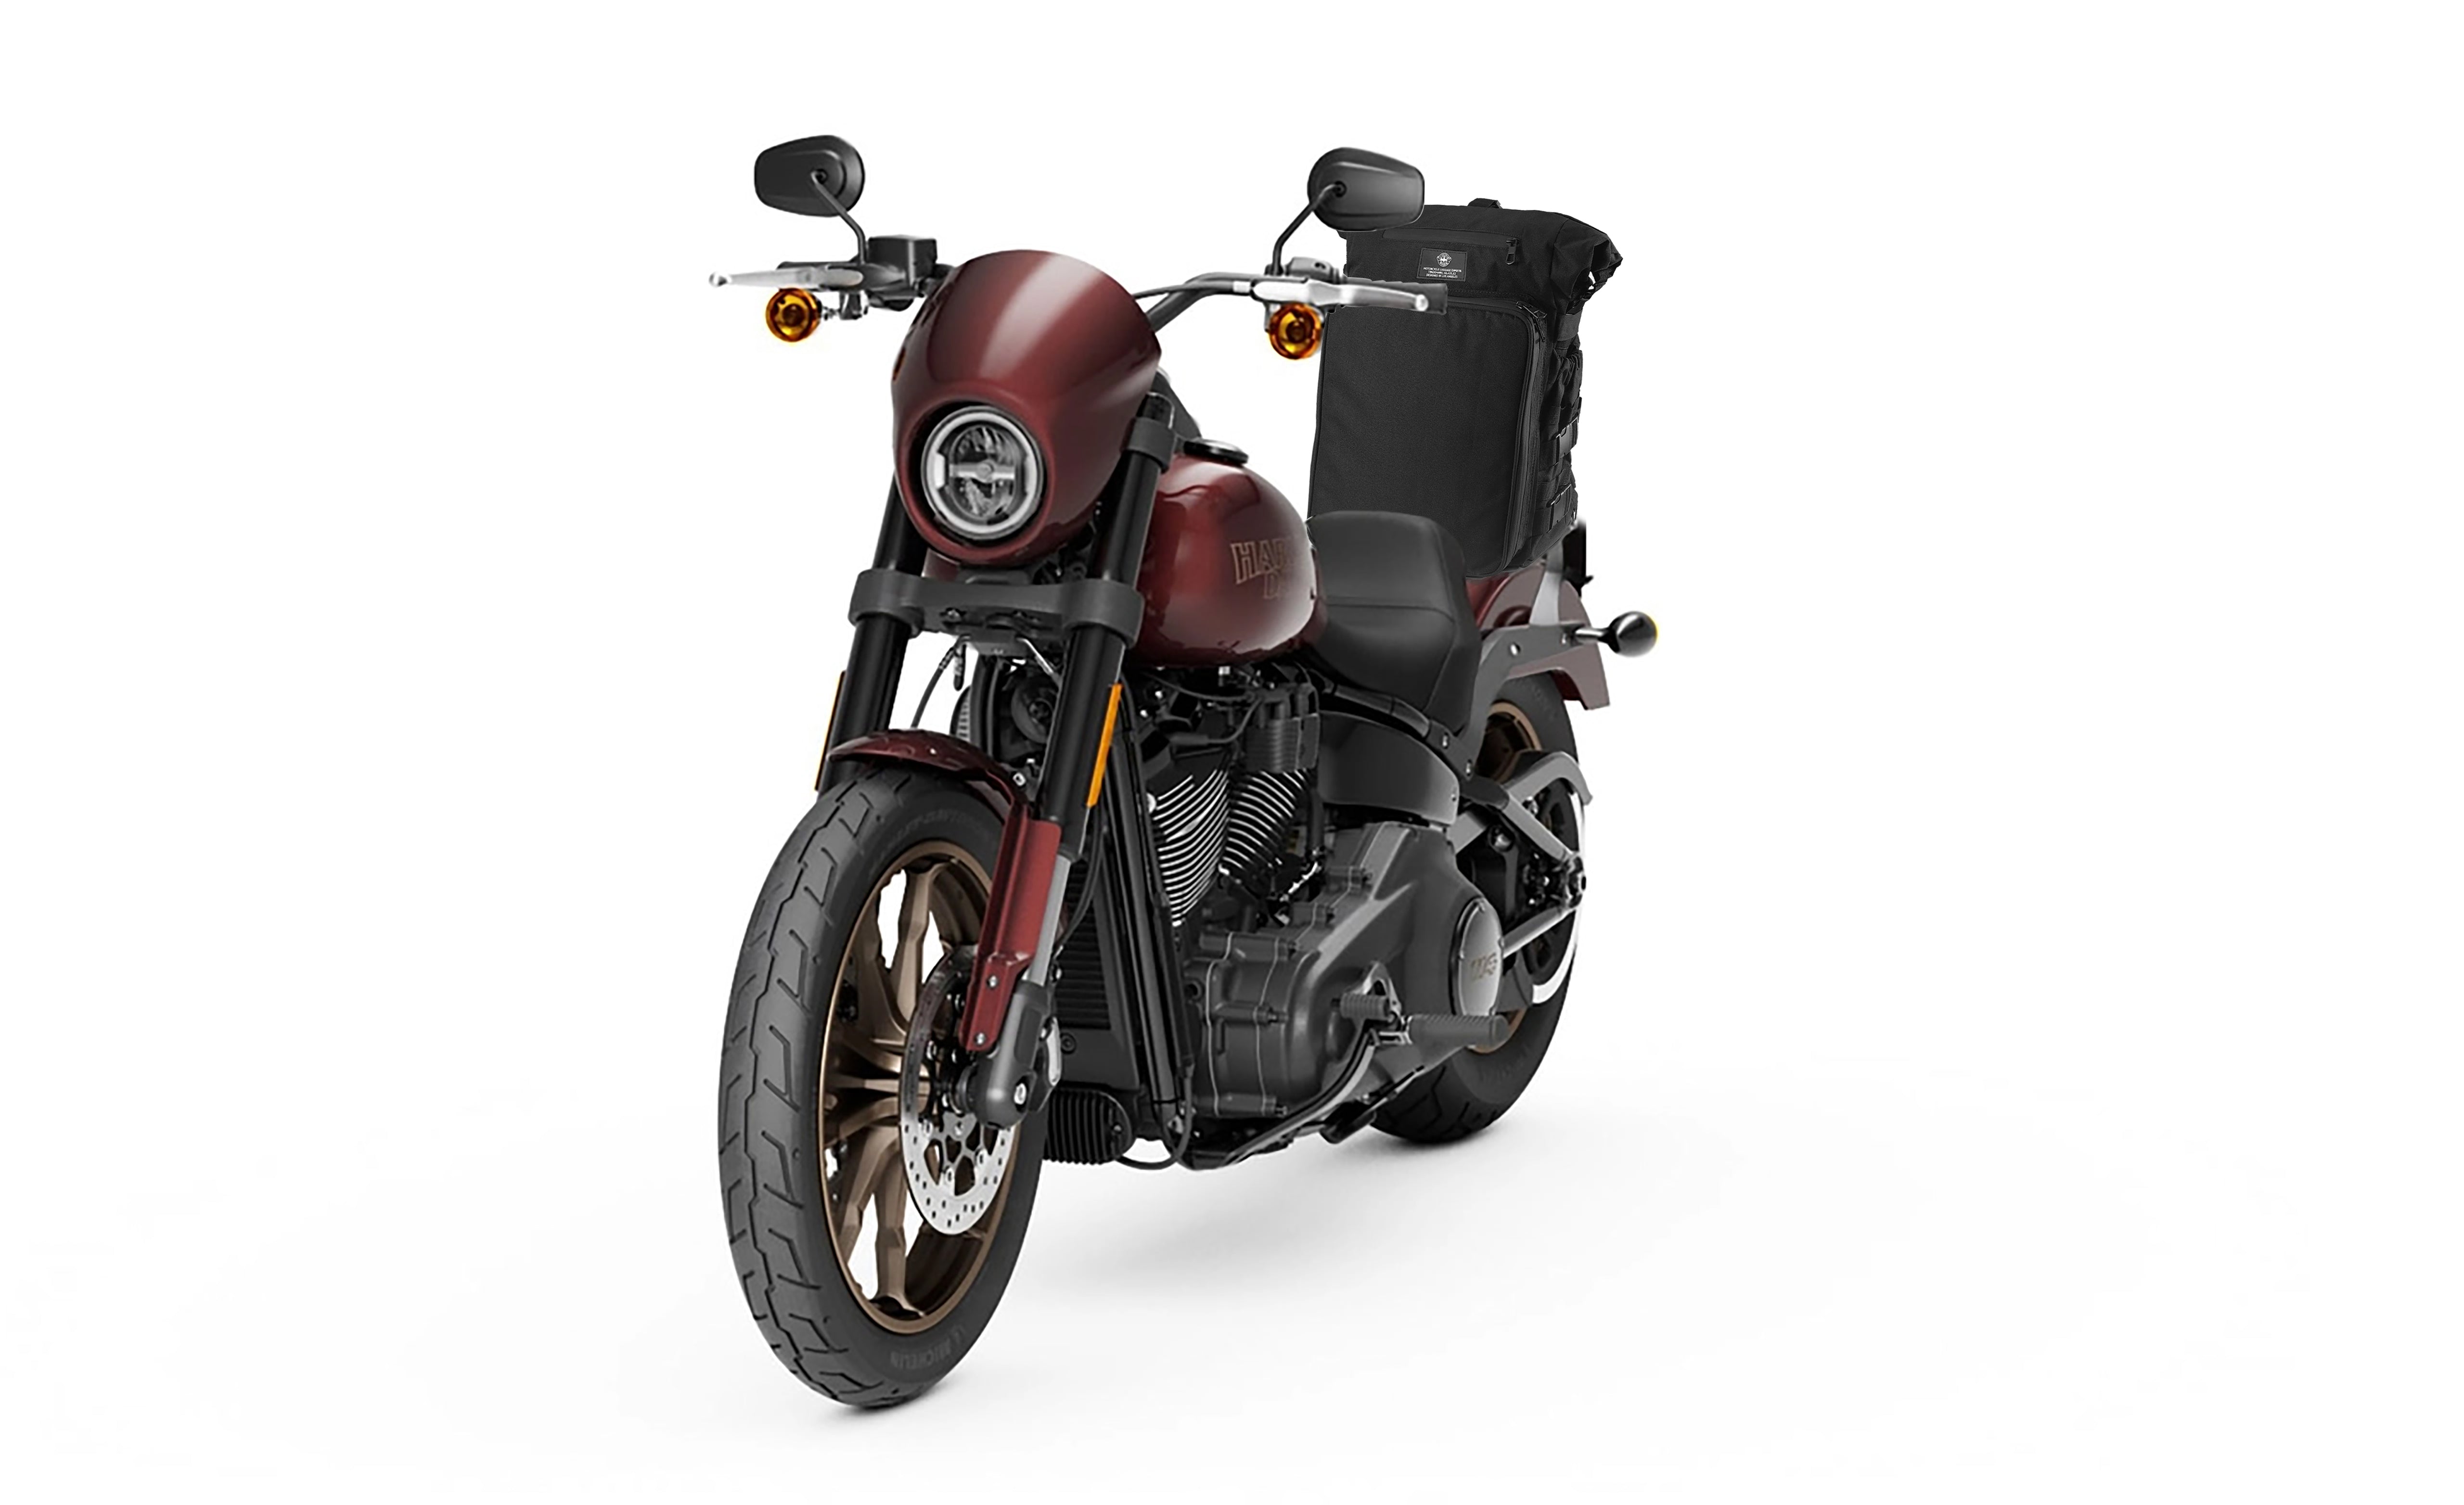 Viking Renegade XL Yamaha Motorcycle Sissy Bar Bag Bag on Bike View @expand